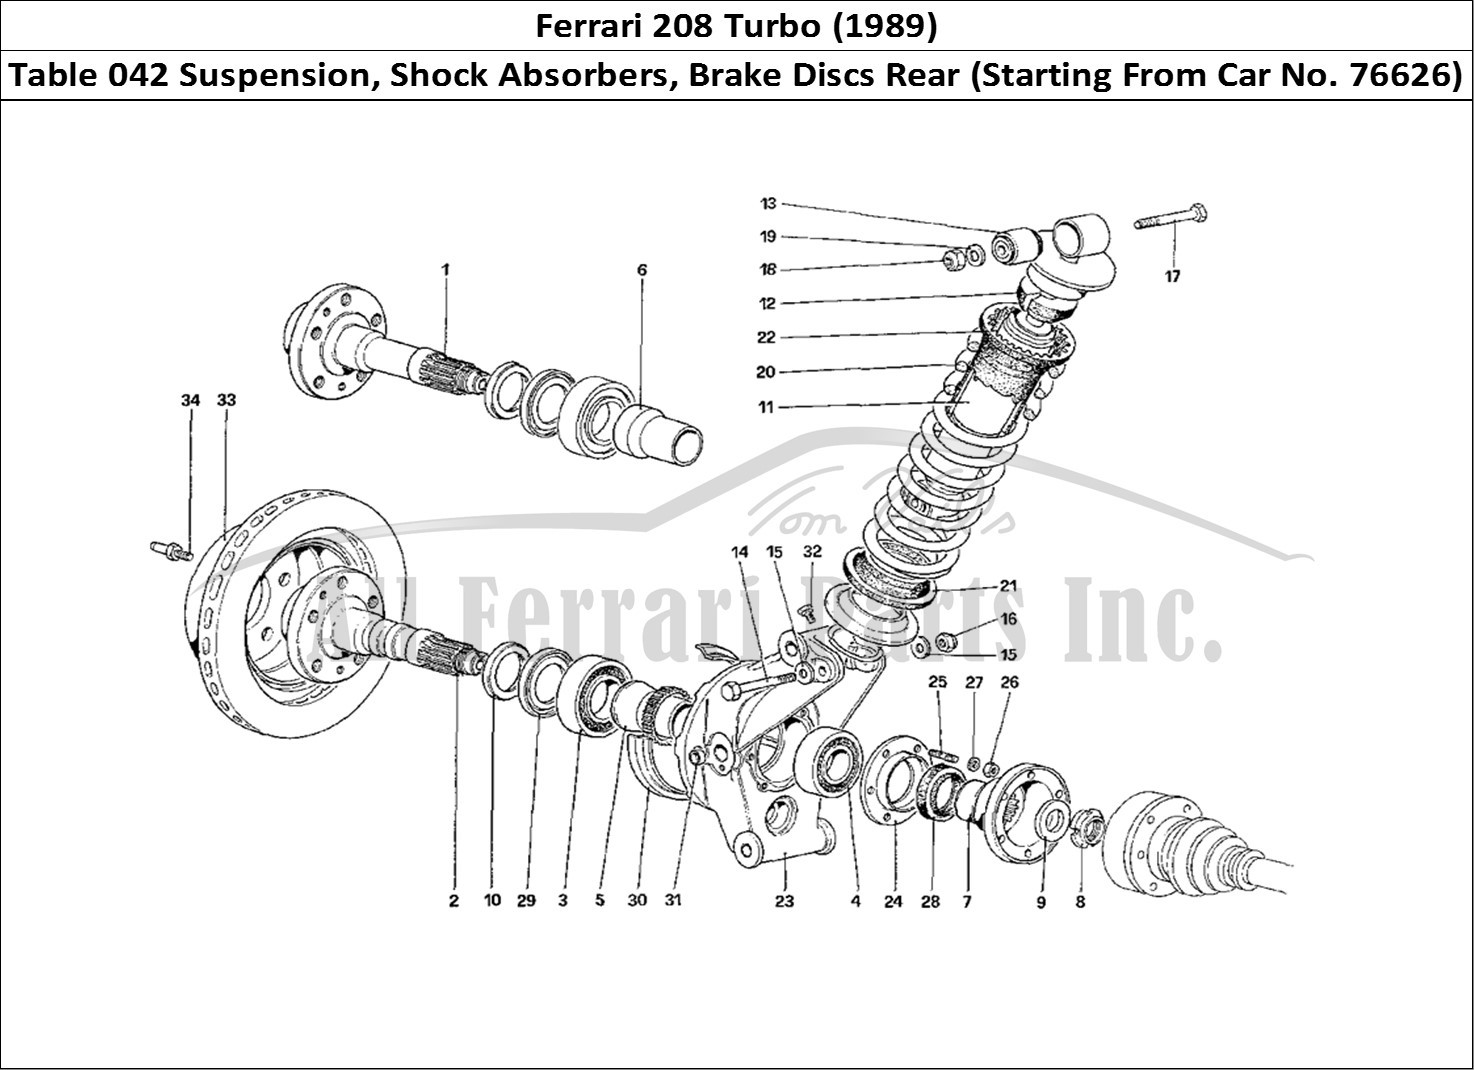 Ferrari Parts Ferrari 208 Turbo (1989) Page 042 Rear Suspension - Shock A